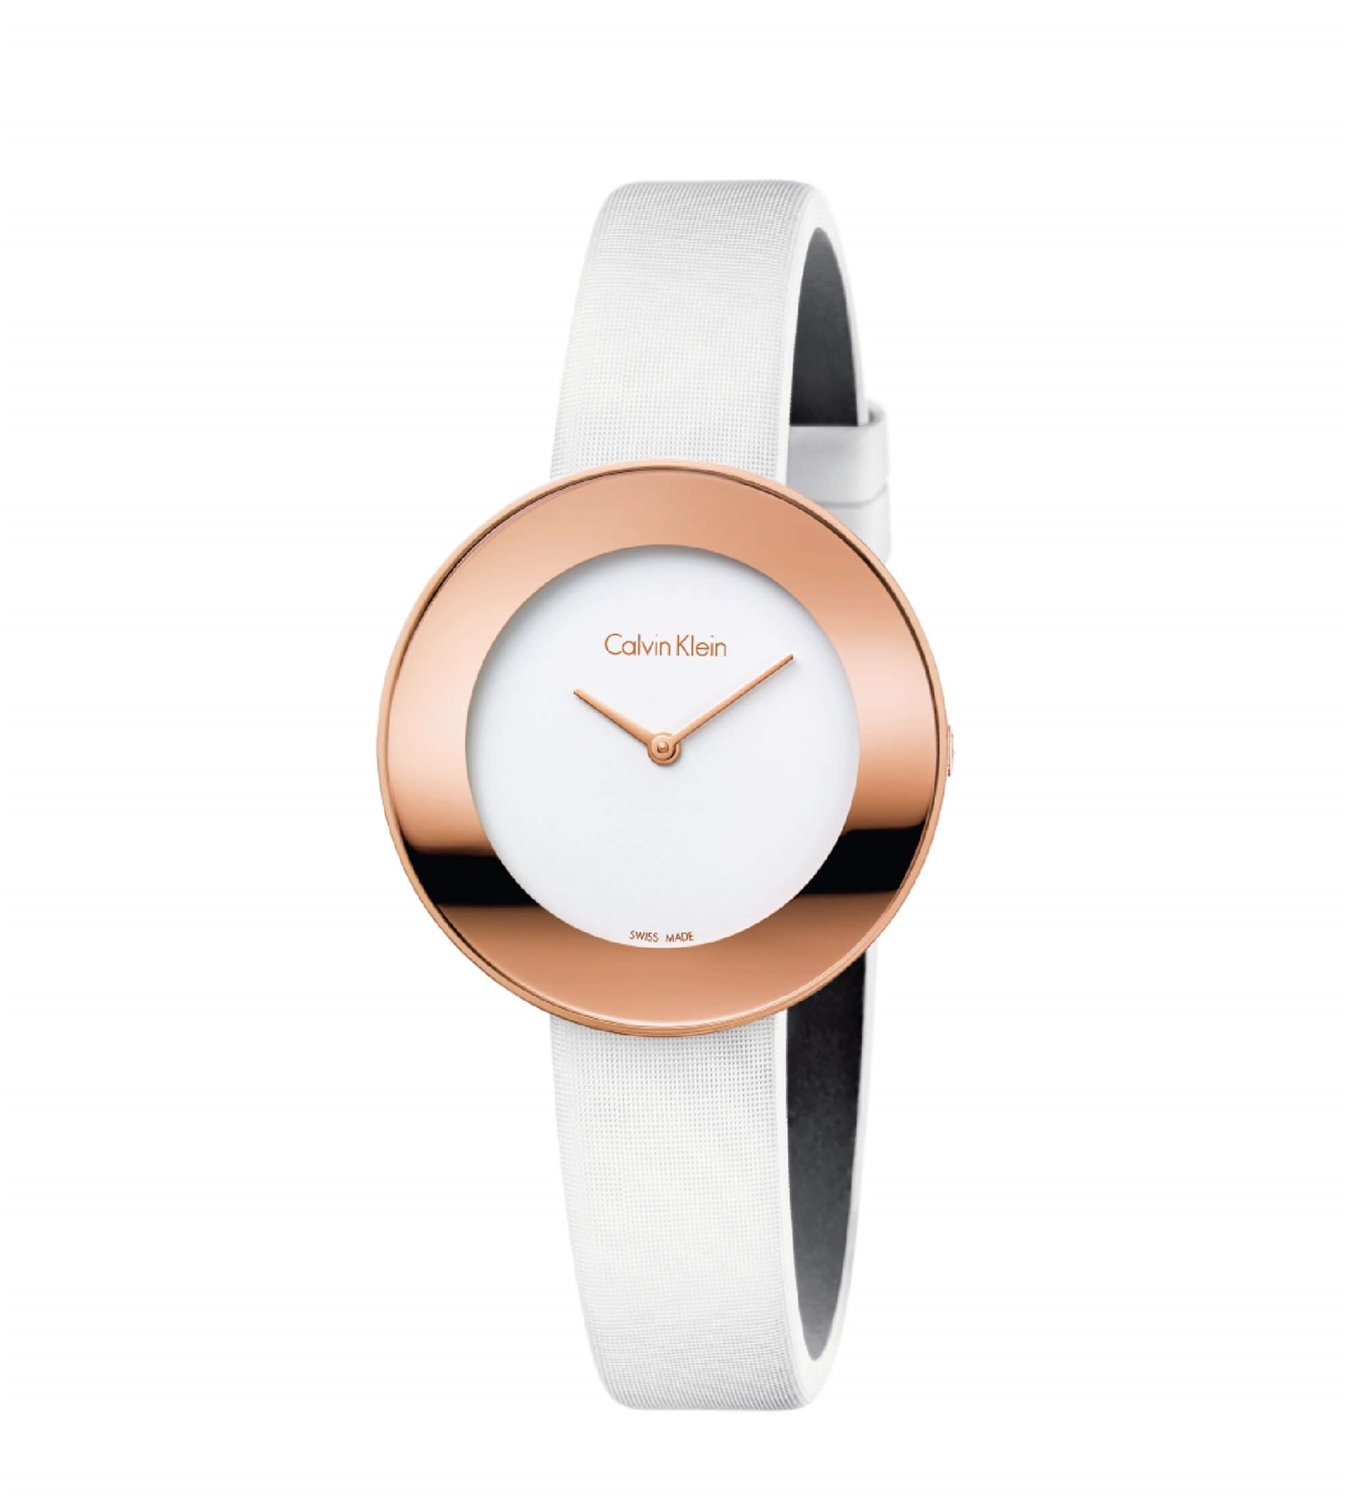 Quartz - Woman - Calvin Klein - K7N236K2 - Chic  - Oiritaly Watch